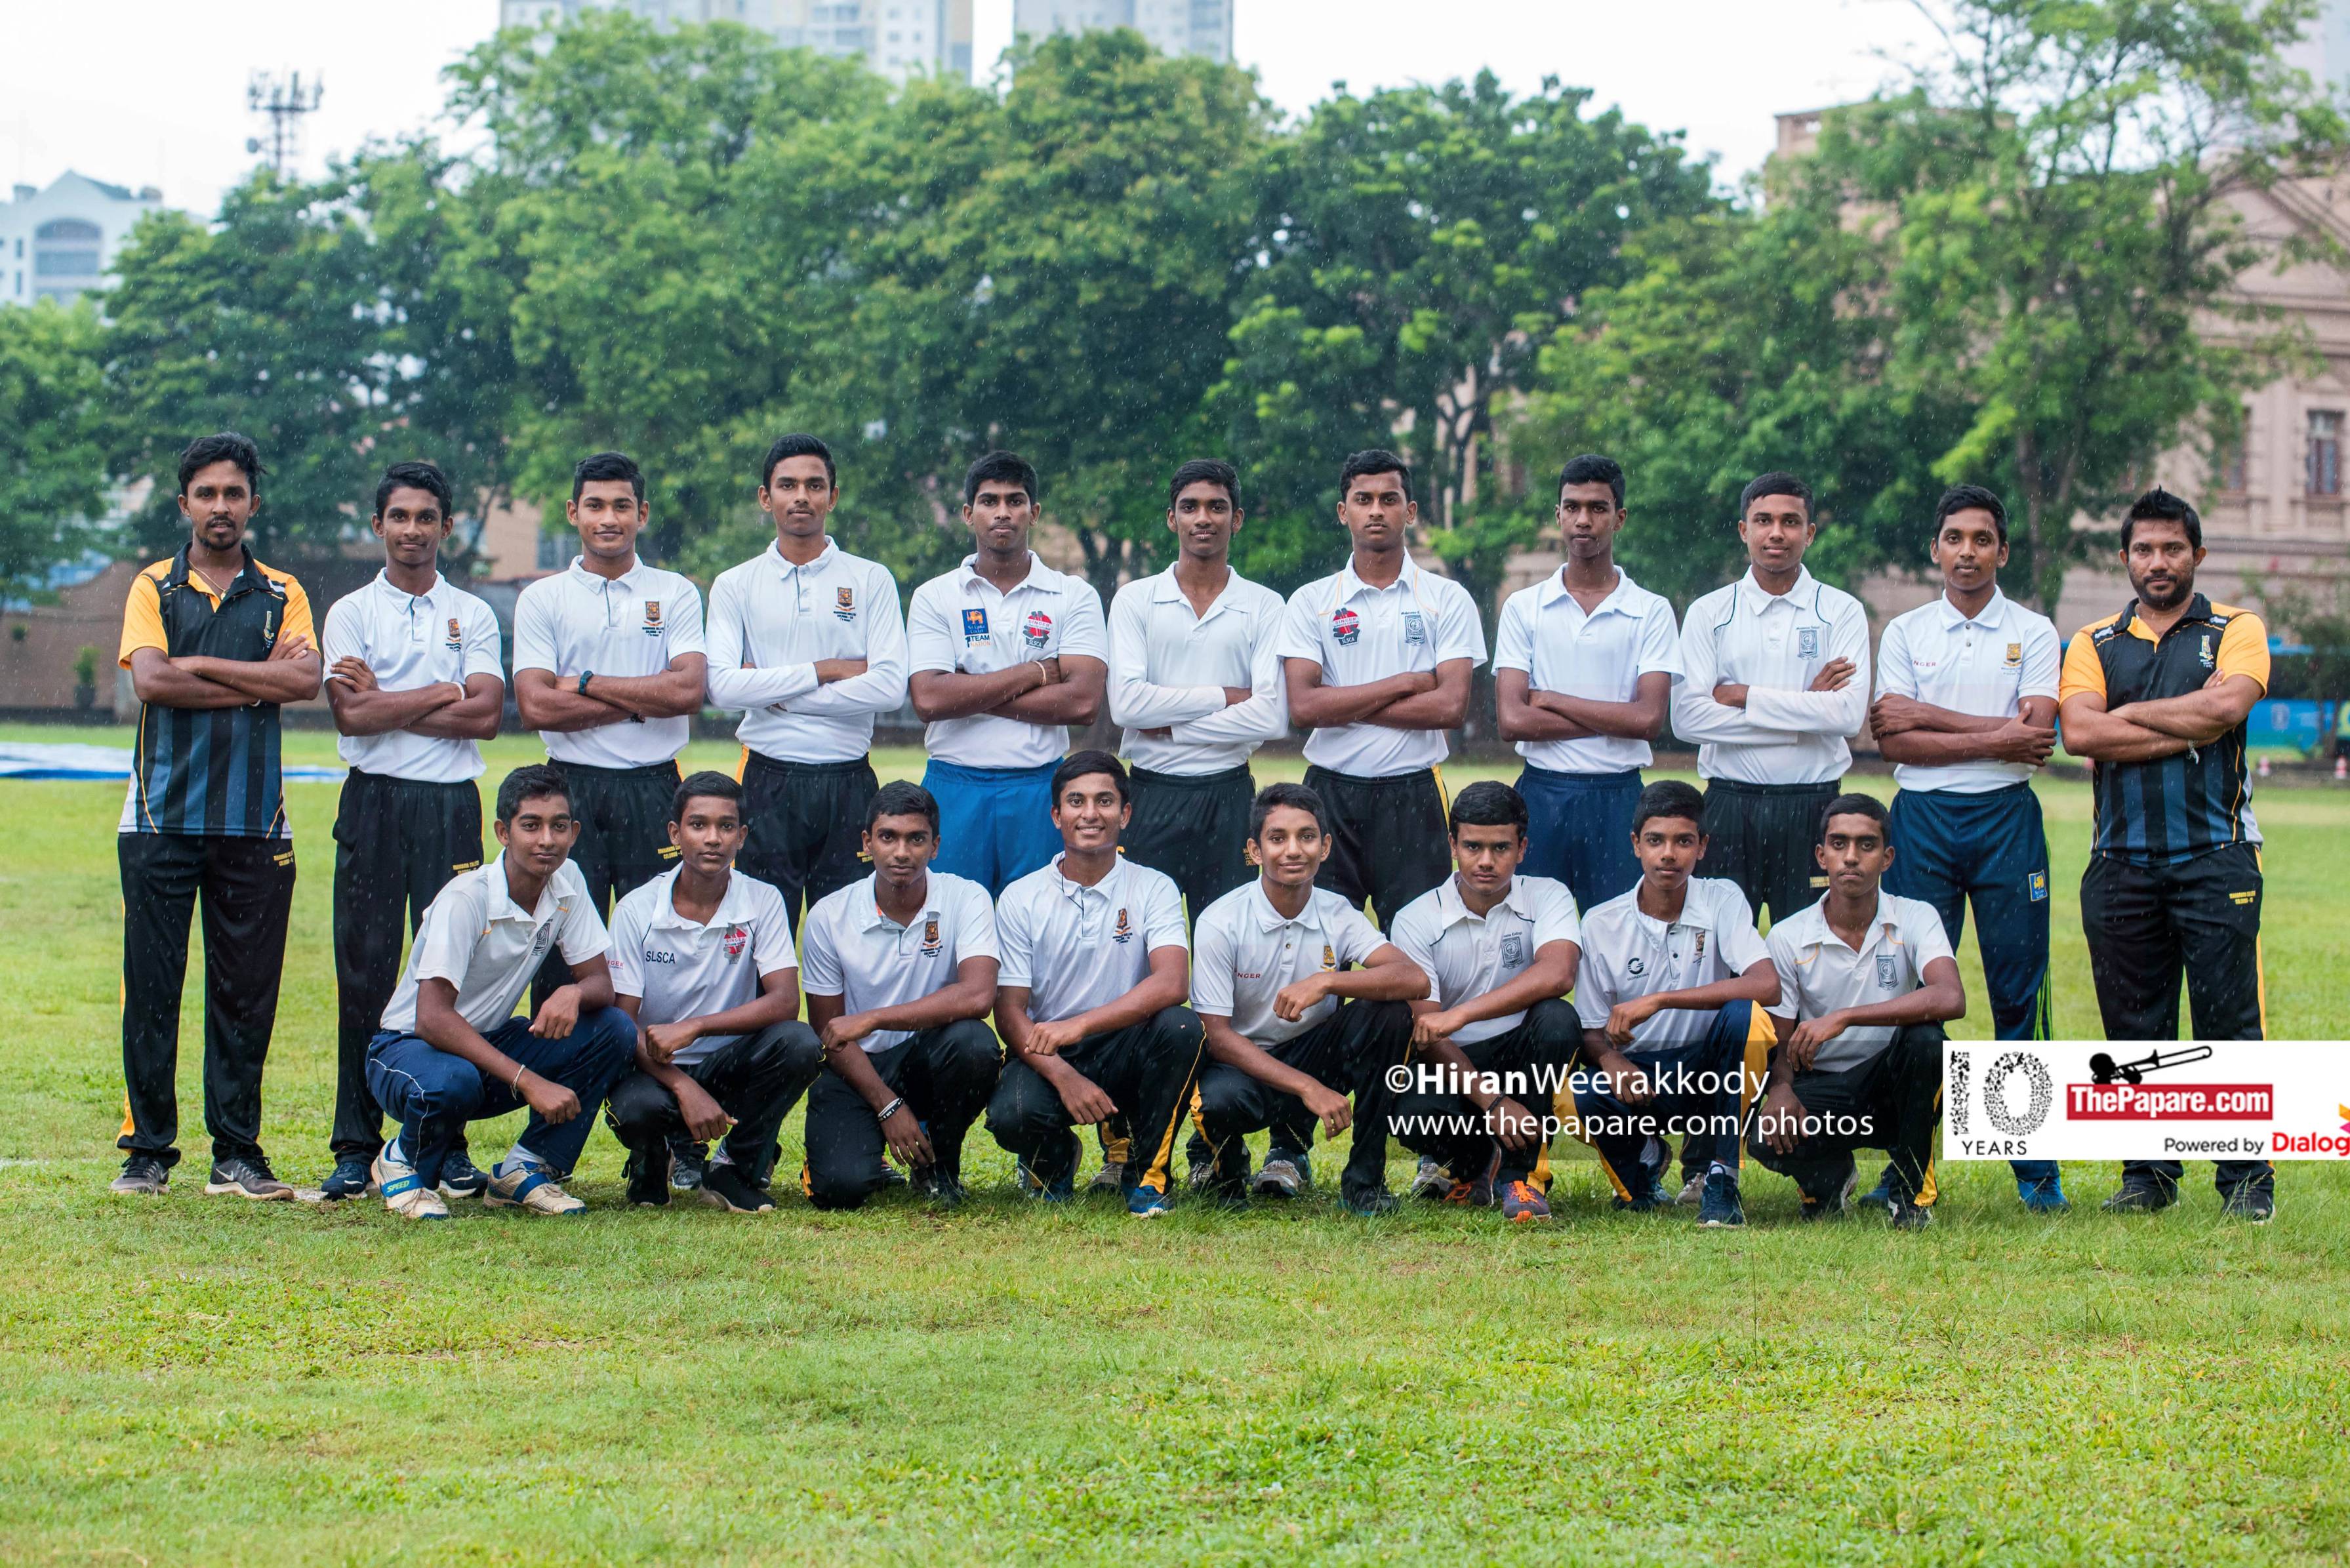 Photos: Mahanama College U17 Cricket Team Preview 2019